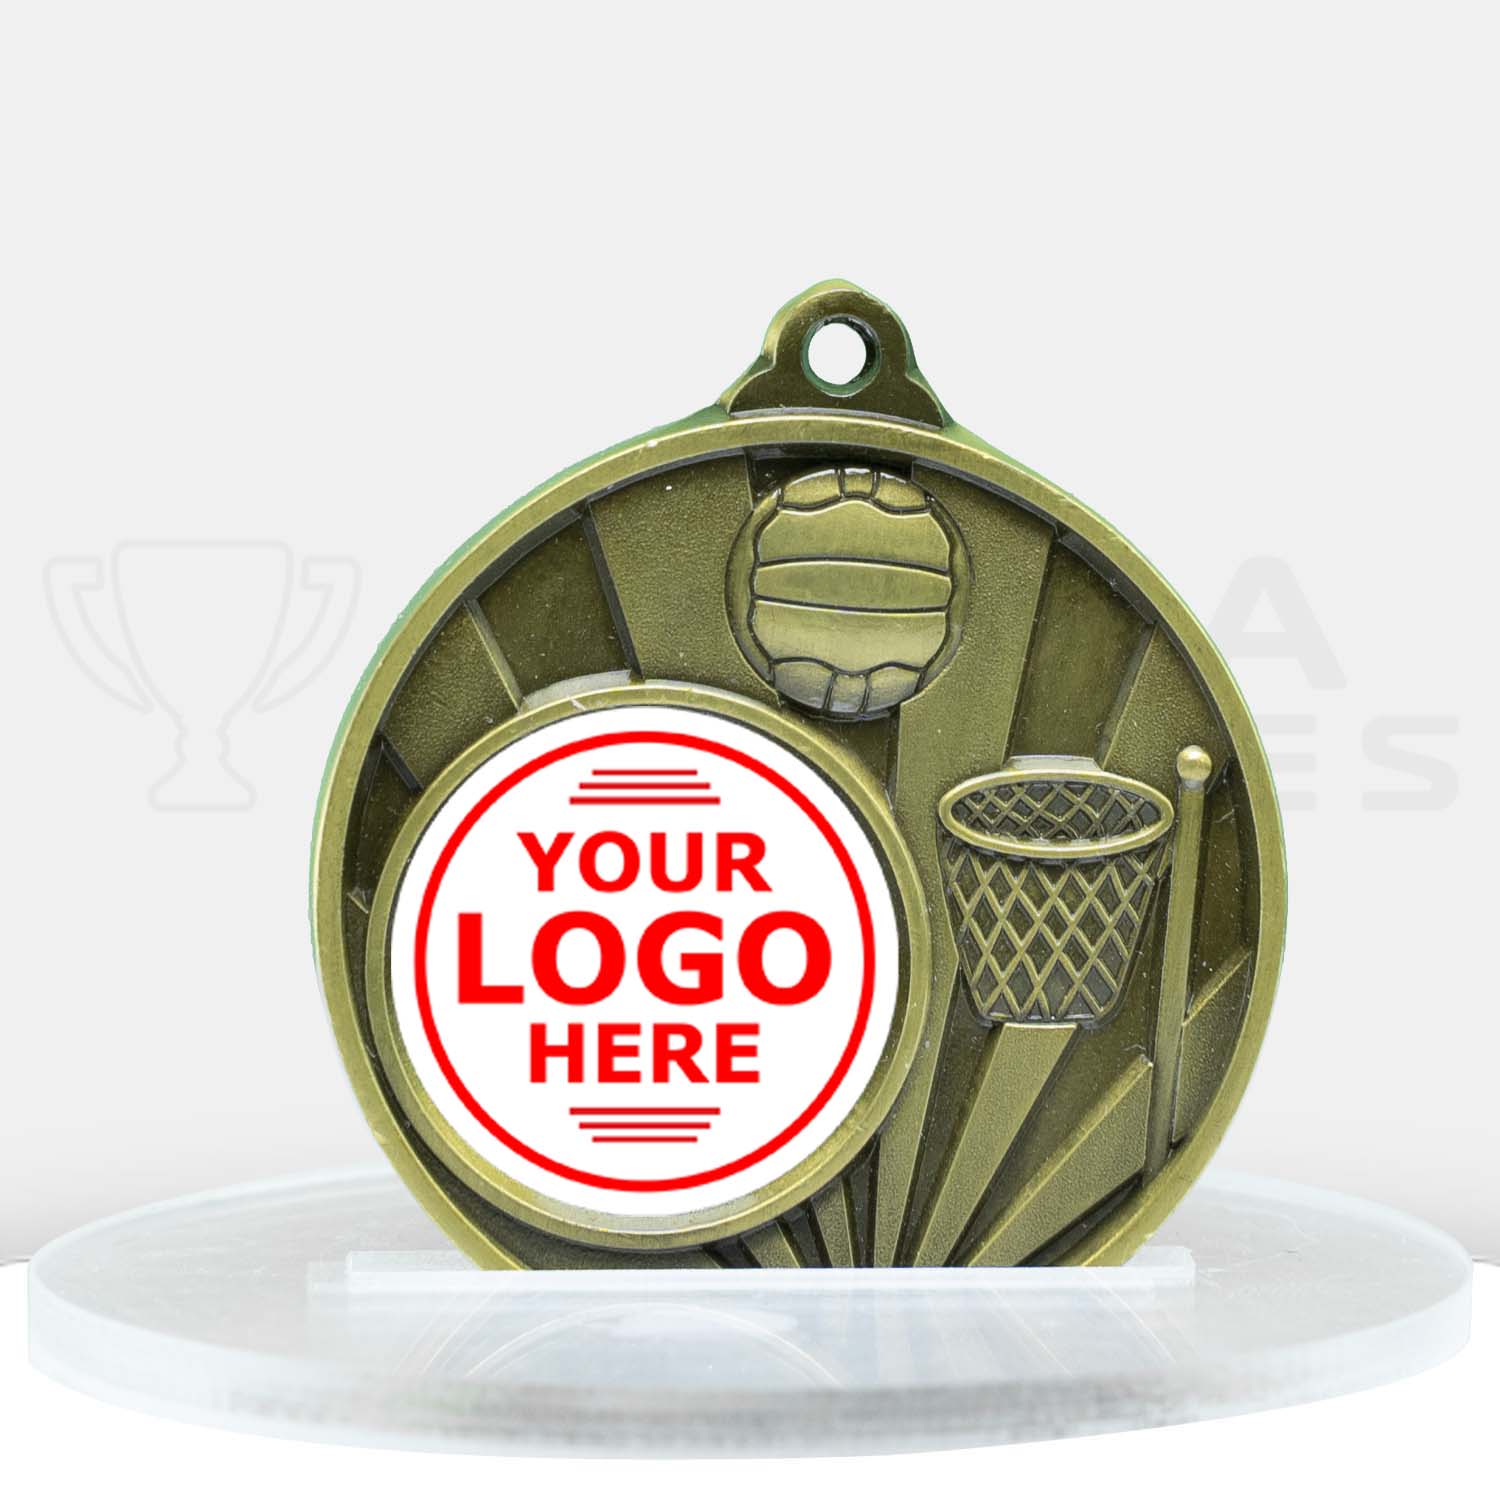 sunrise-medal-netball-25mm-insert-gold-1076c-8g-front-with-logo